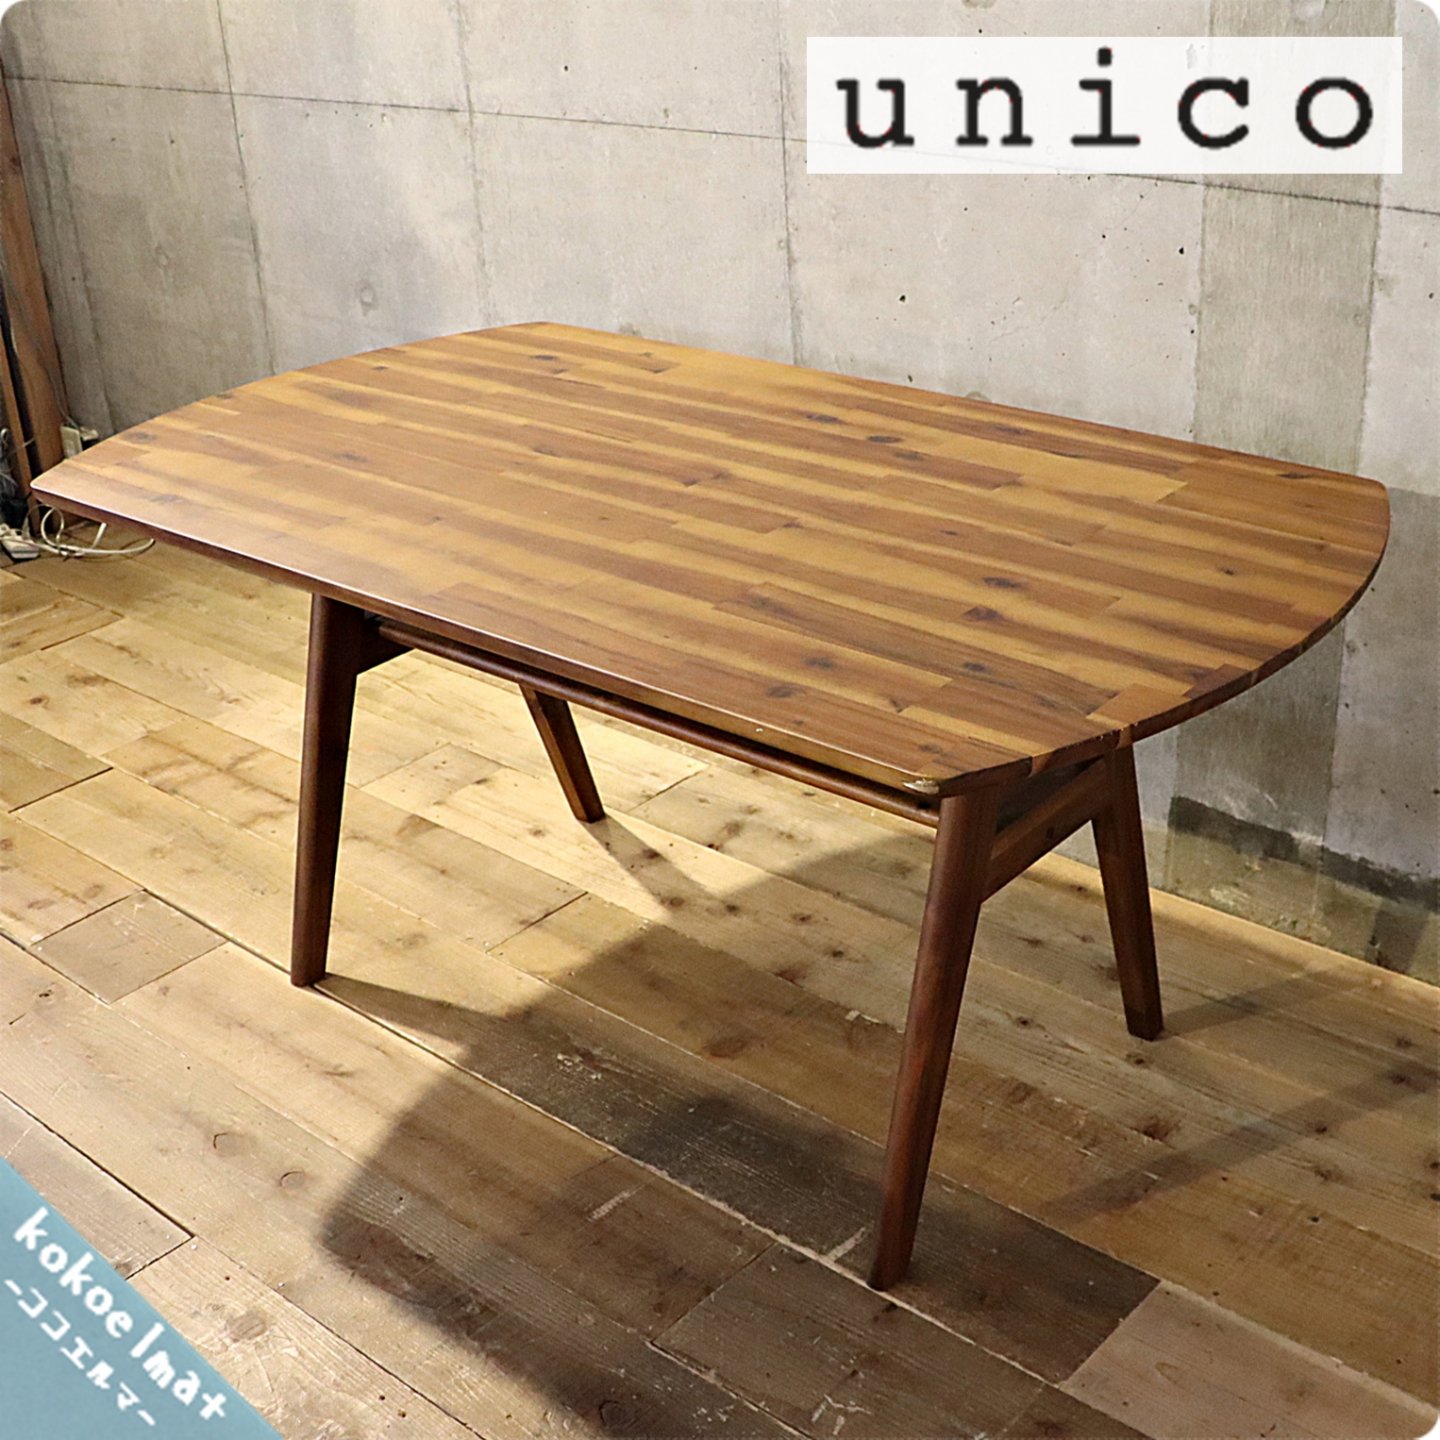 unico(ウニコ)のSWELLA(スウェラ)ダイニングテーブルW1400です